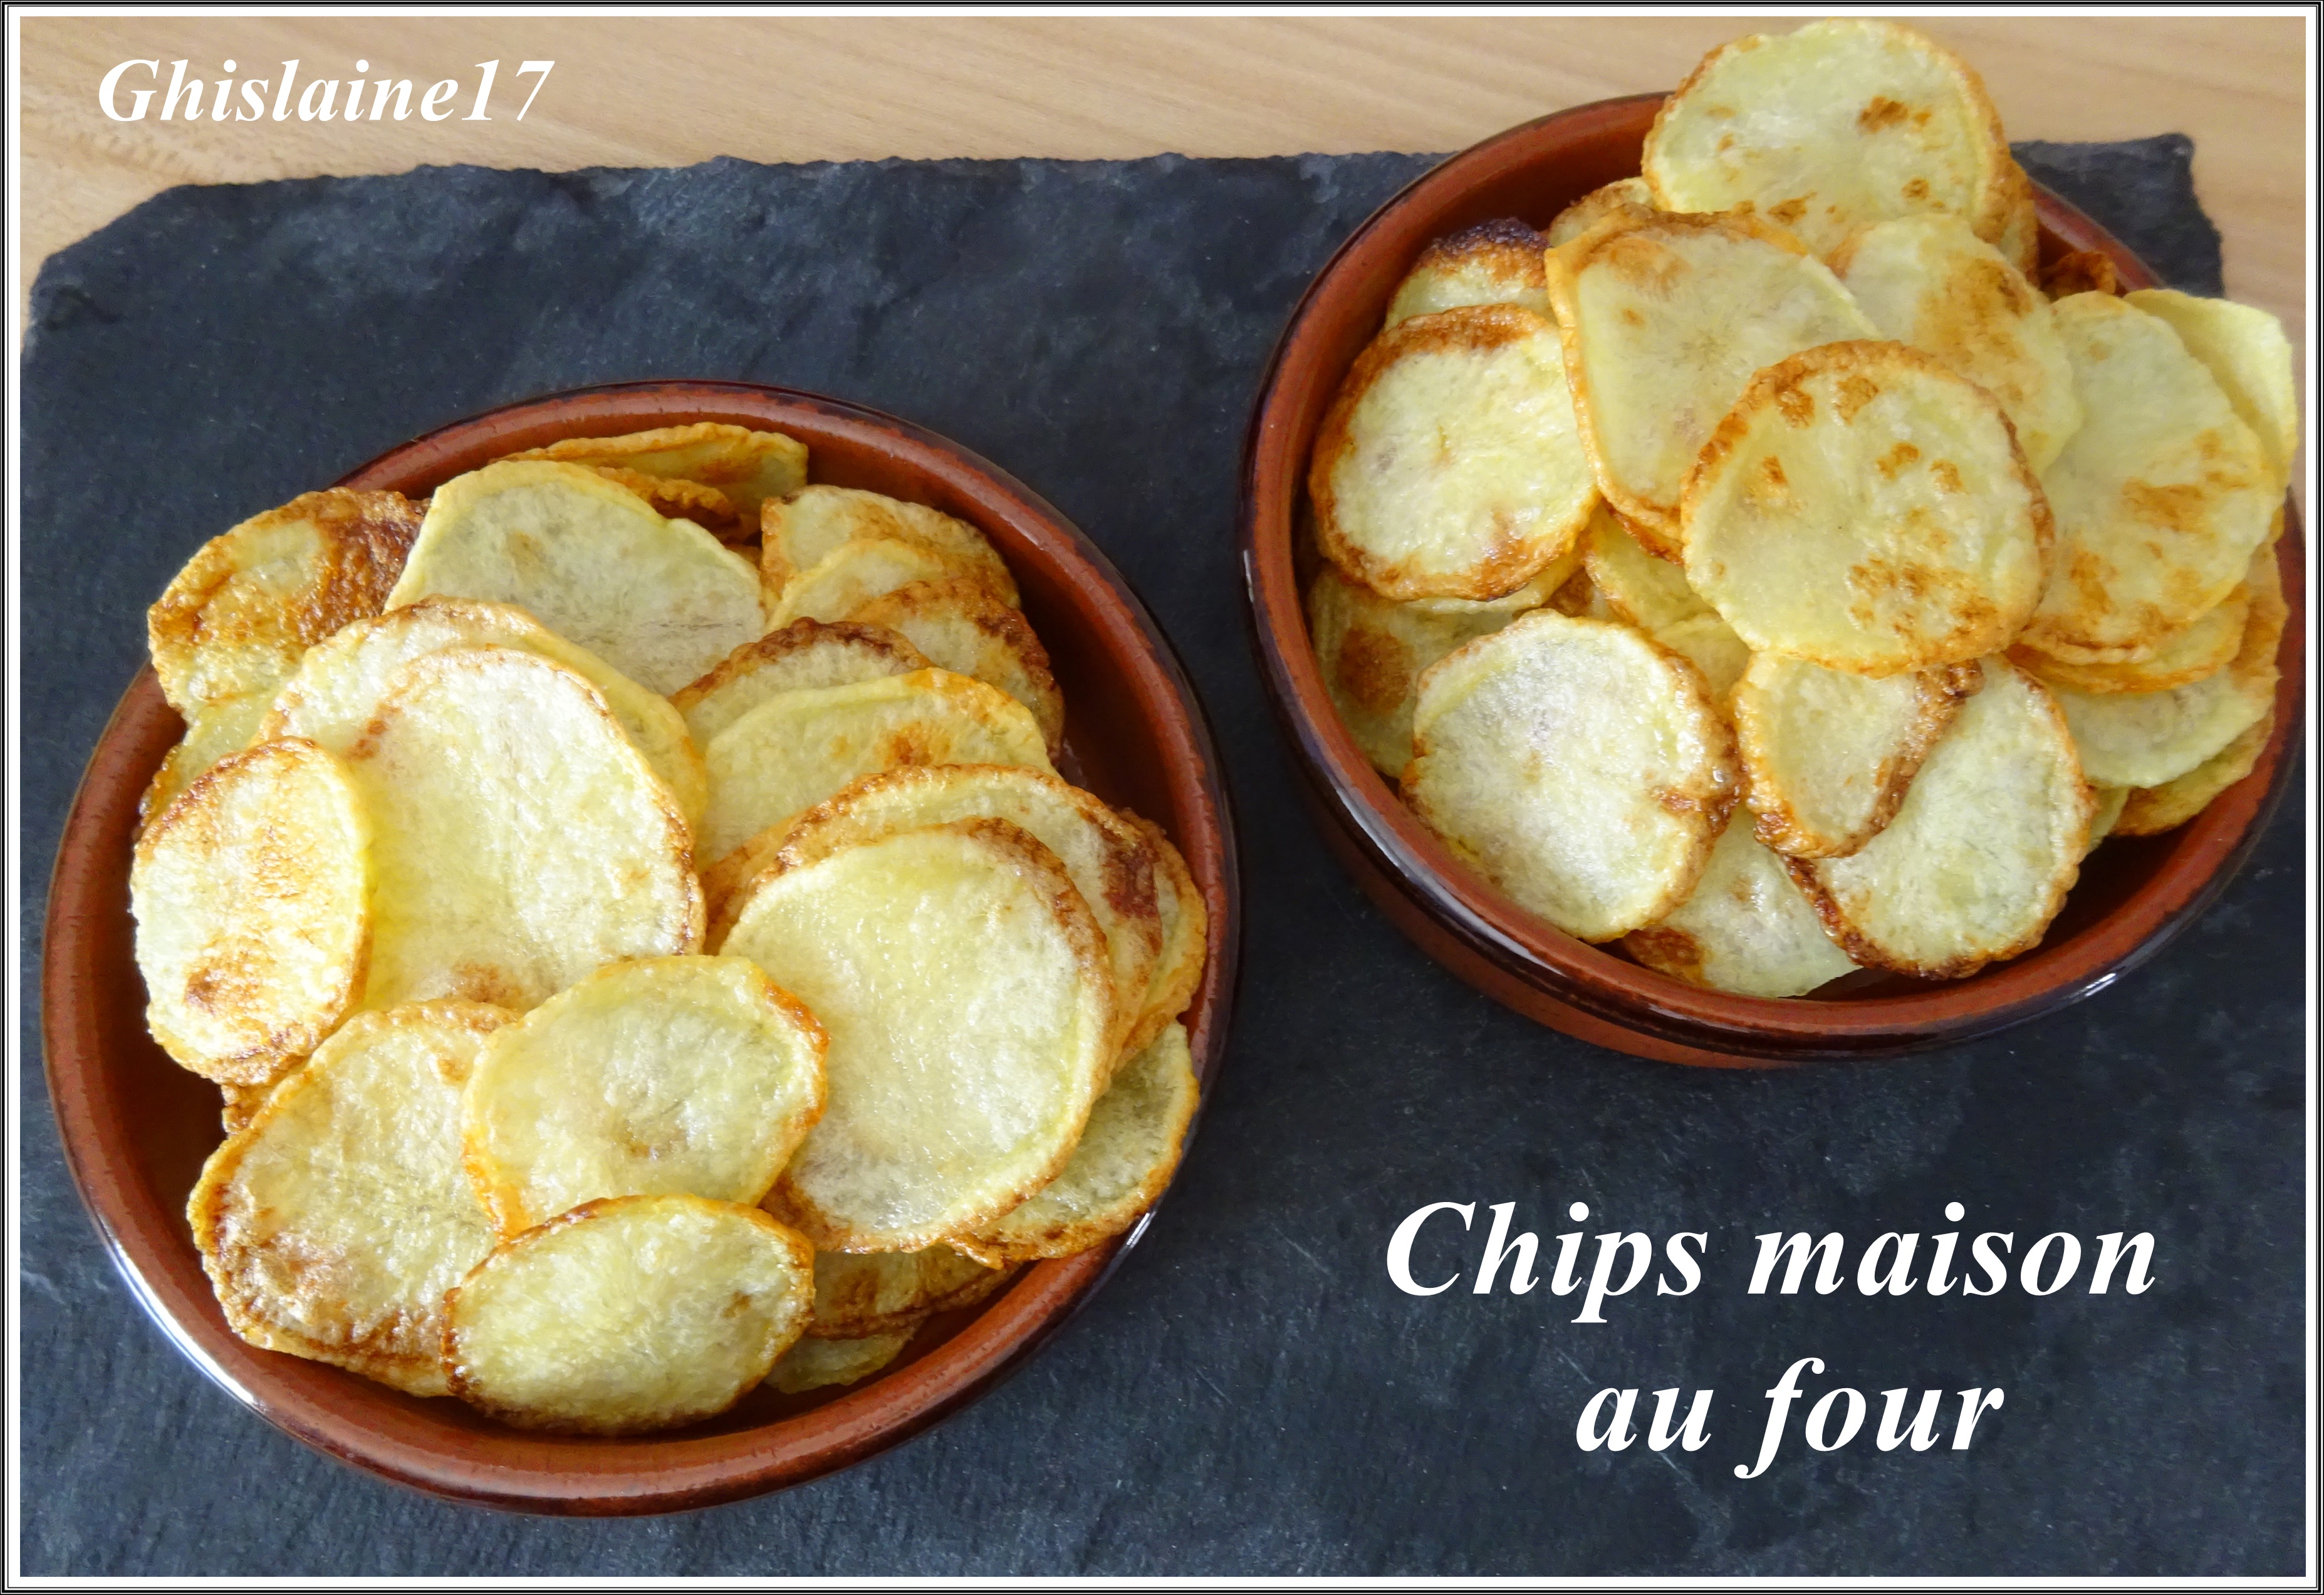 Chips maison au four - Ghislaine Cuisine